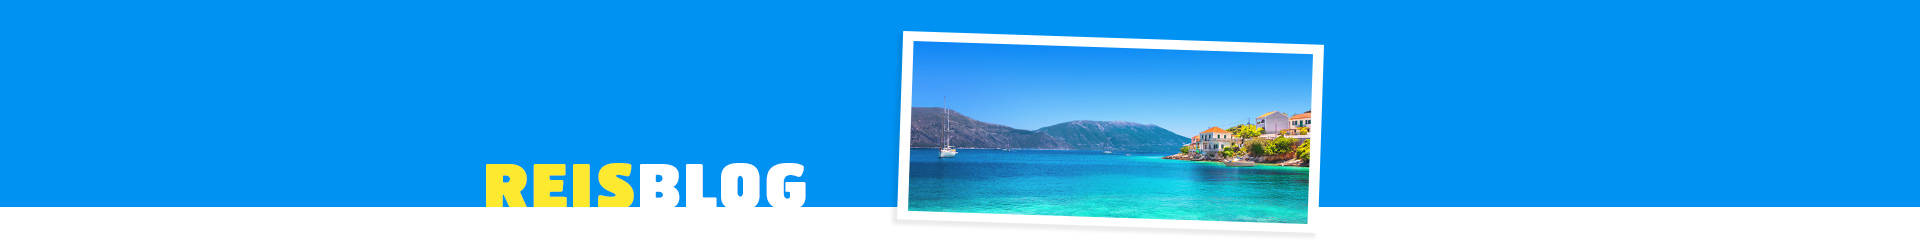 Grieks eiland, met azuurblauwe zee en een zeilboot. In de verte Griekse huisjes die uitkijken over de zee.